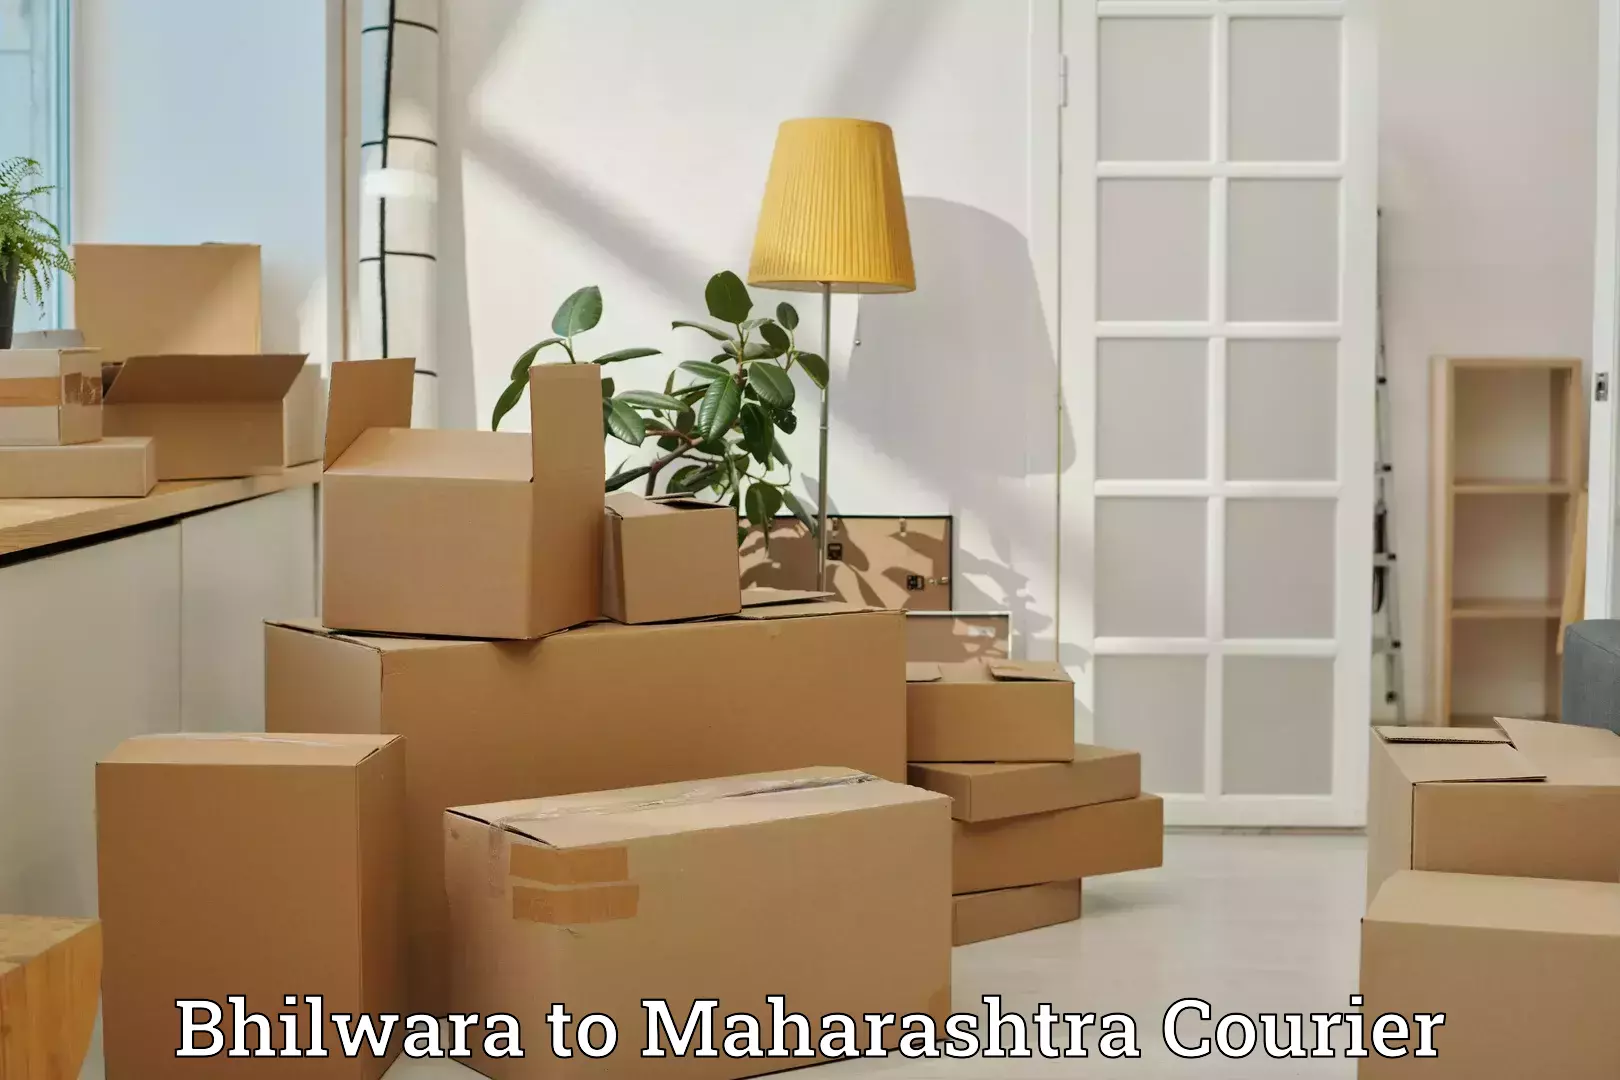 Luggage shipment specialists Bhilwara to Saoli